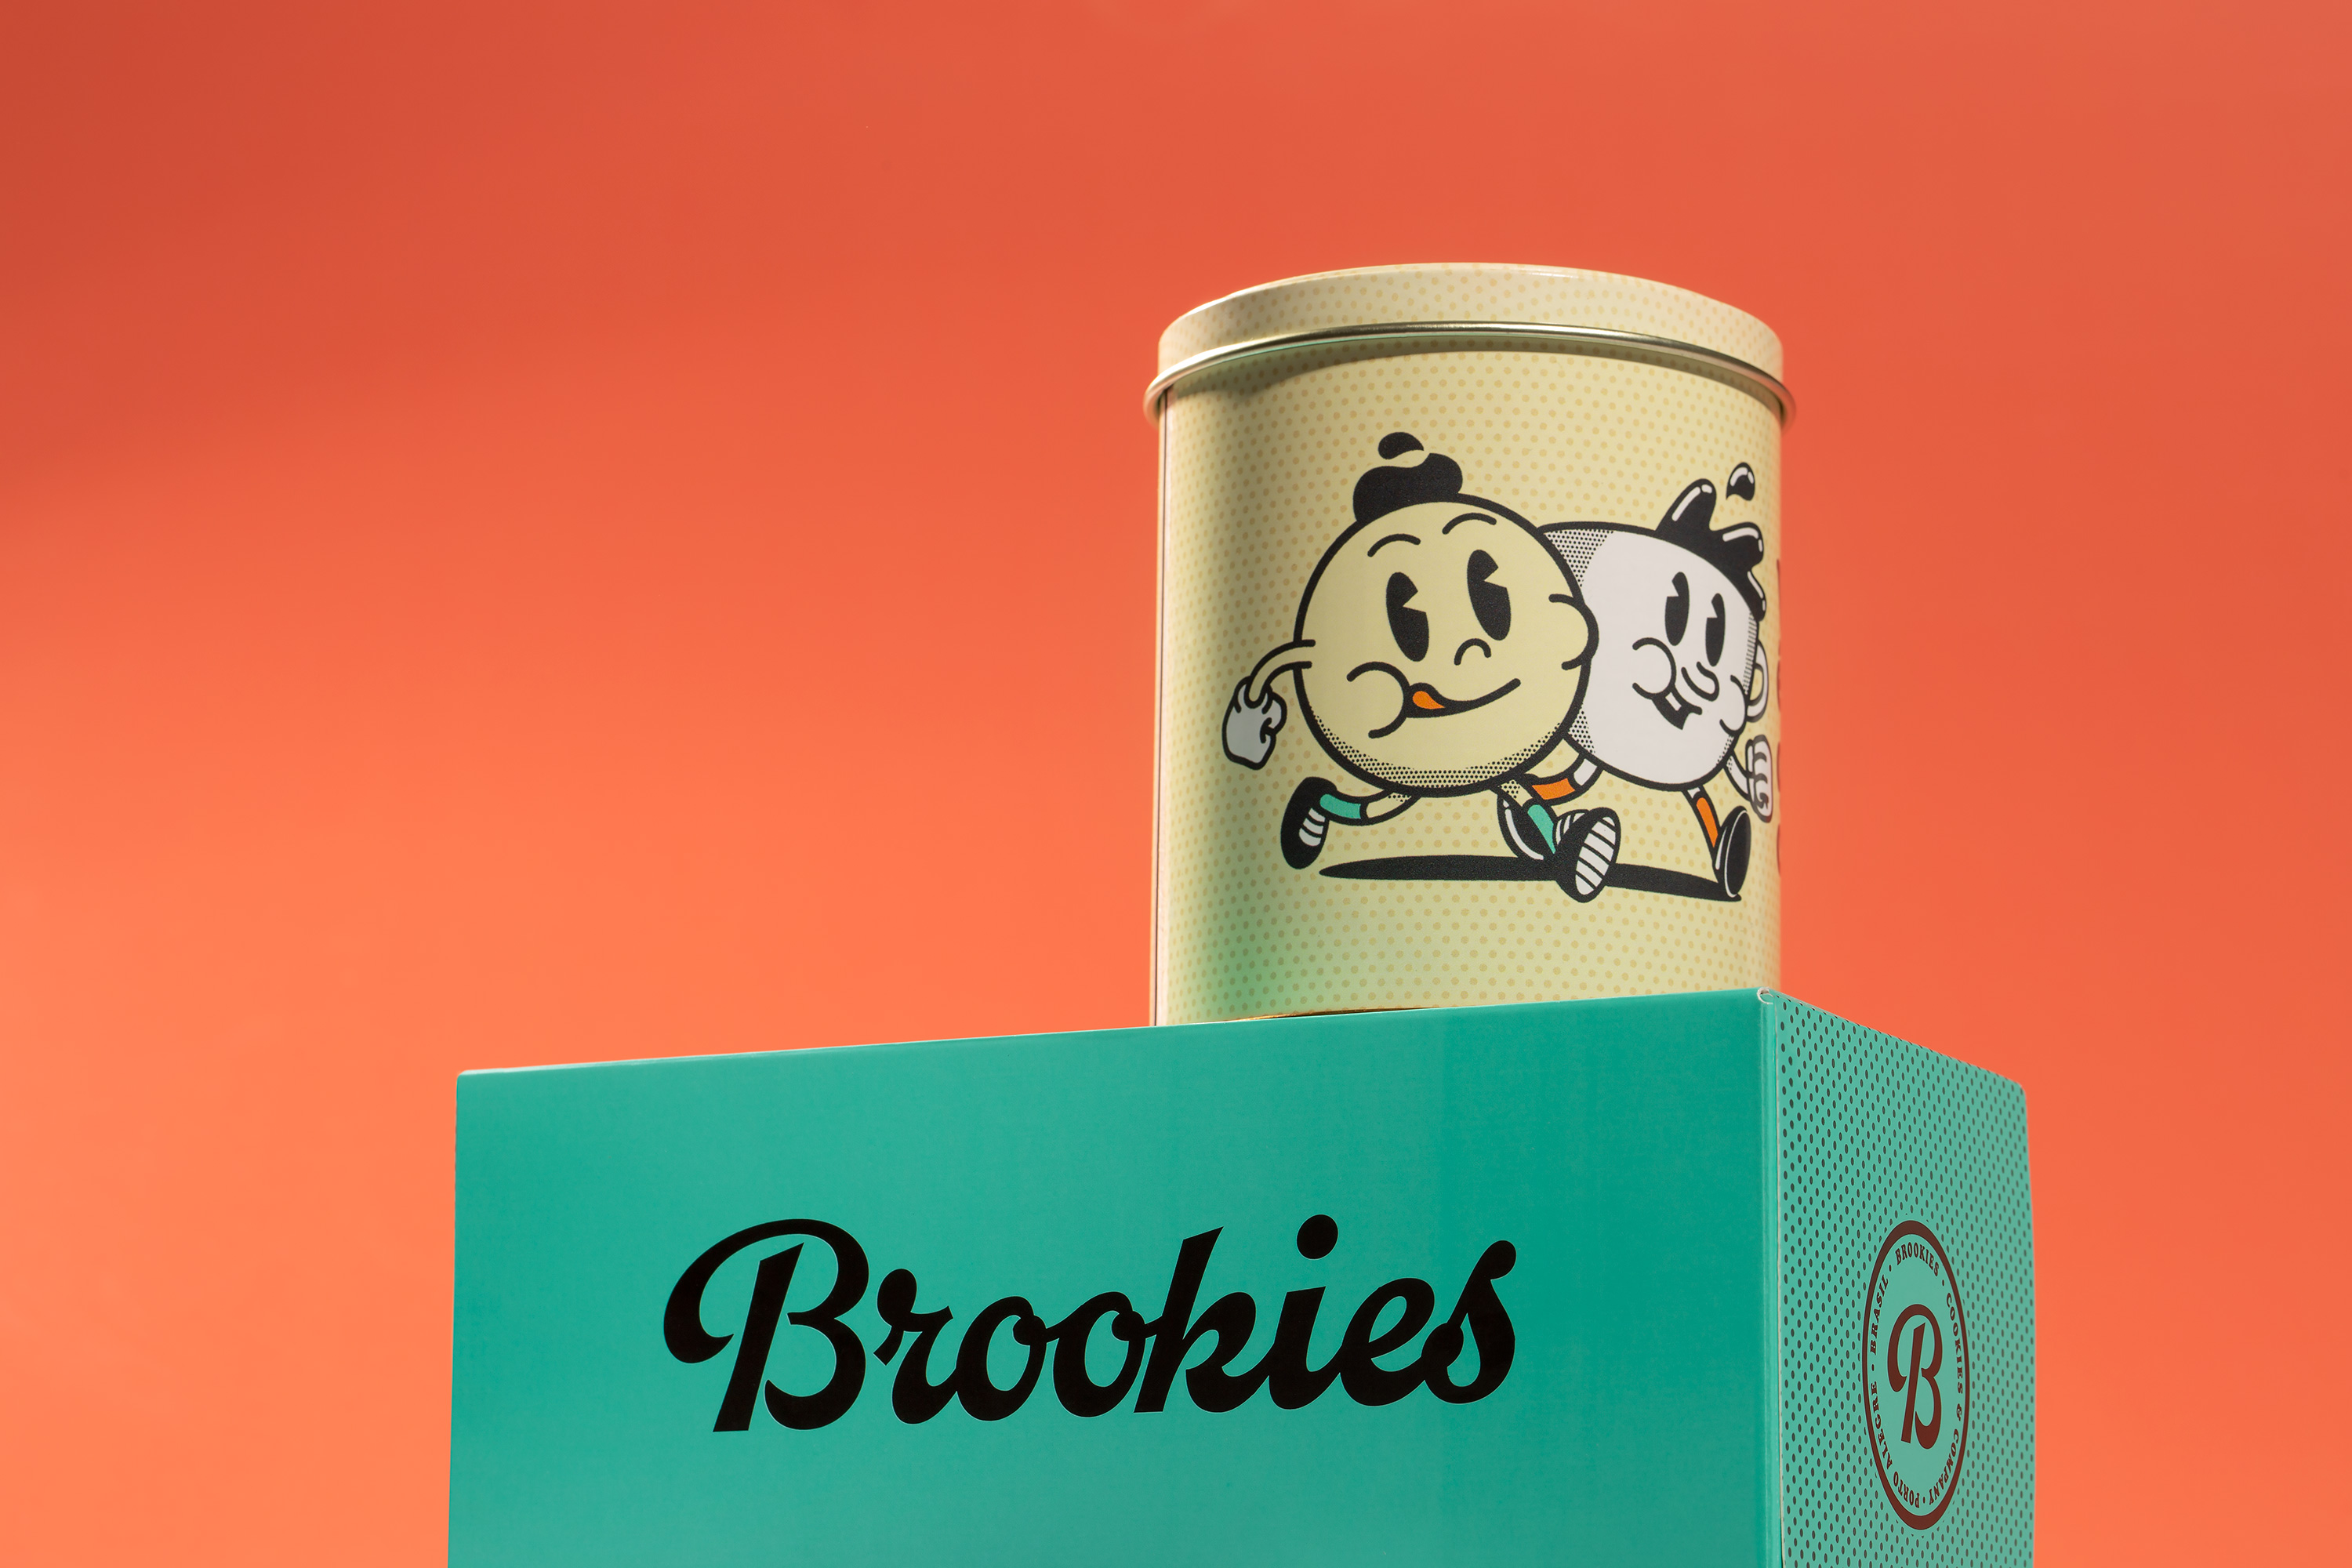 Brookies Cookies & Co Branding by Blank Design Studio